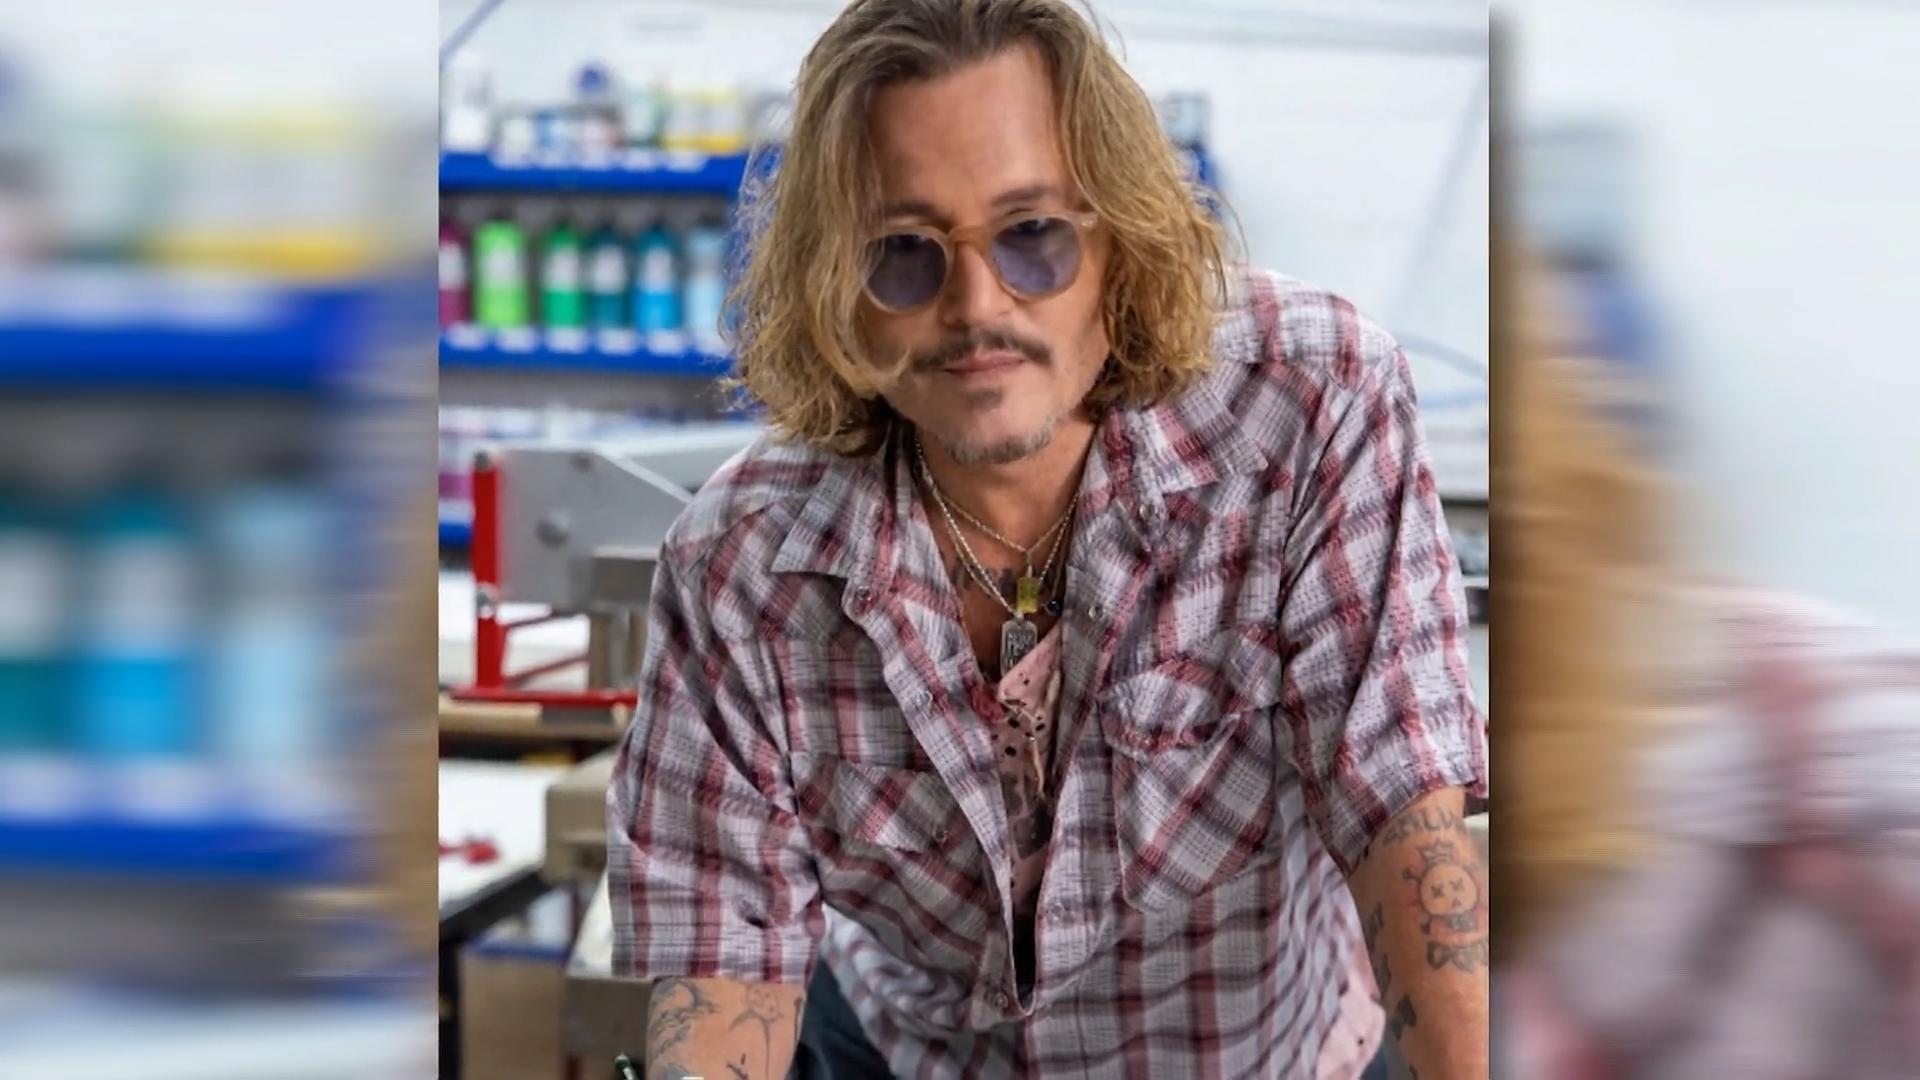 Kollektion in wenigen Stunden ausverkauft Johnny Depp als Maler